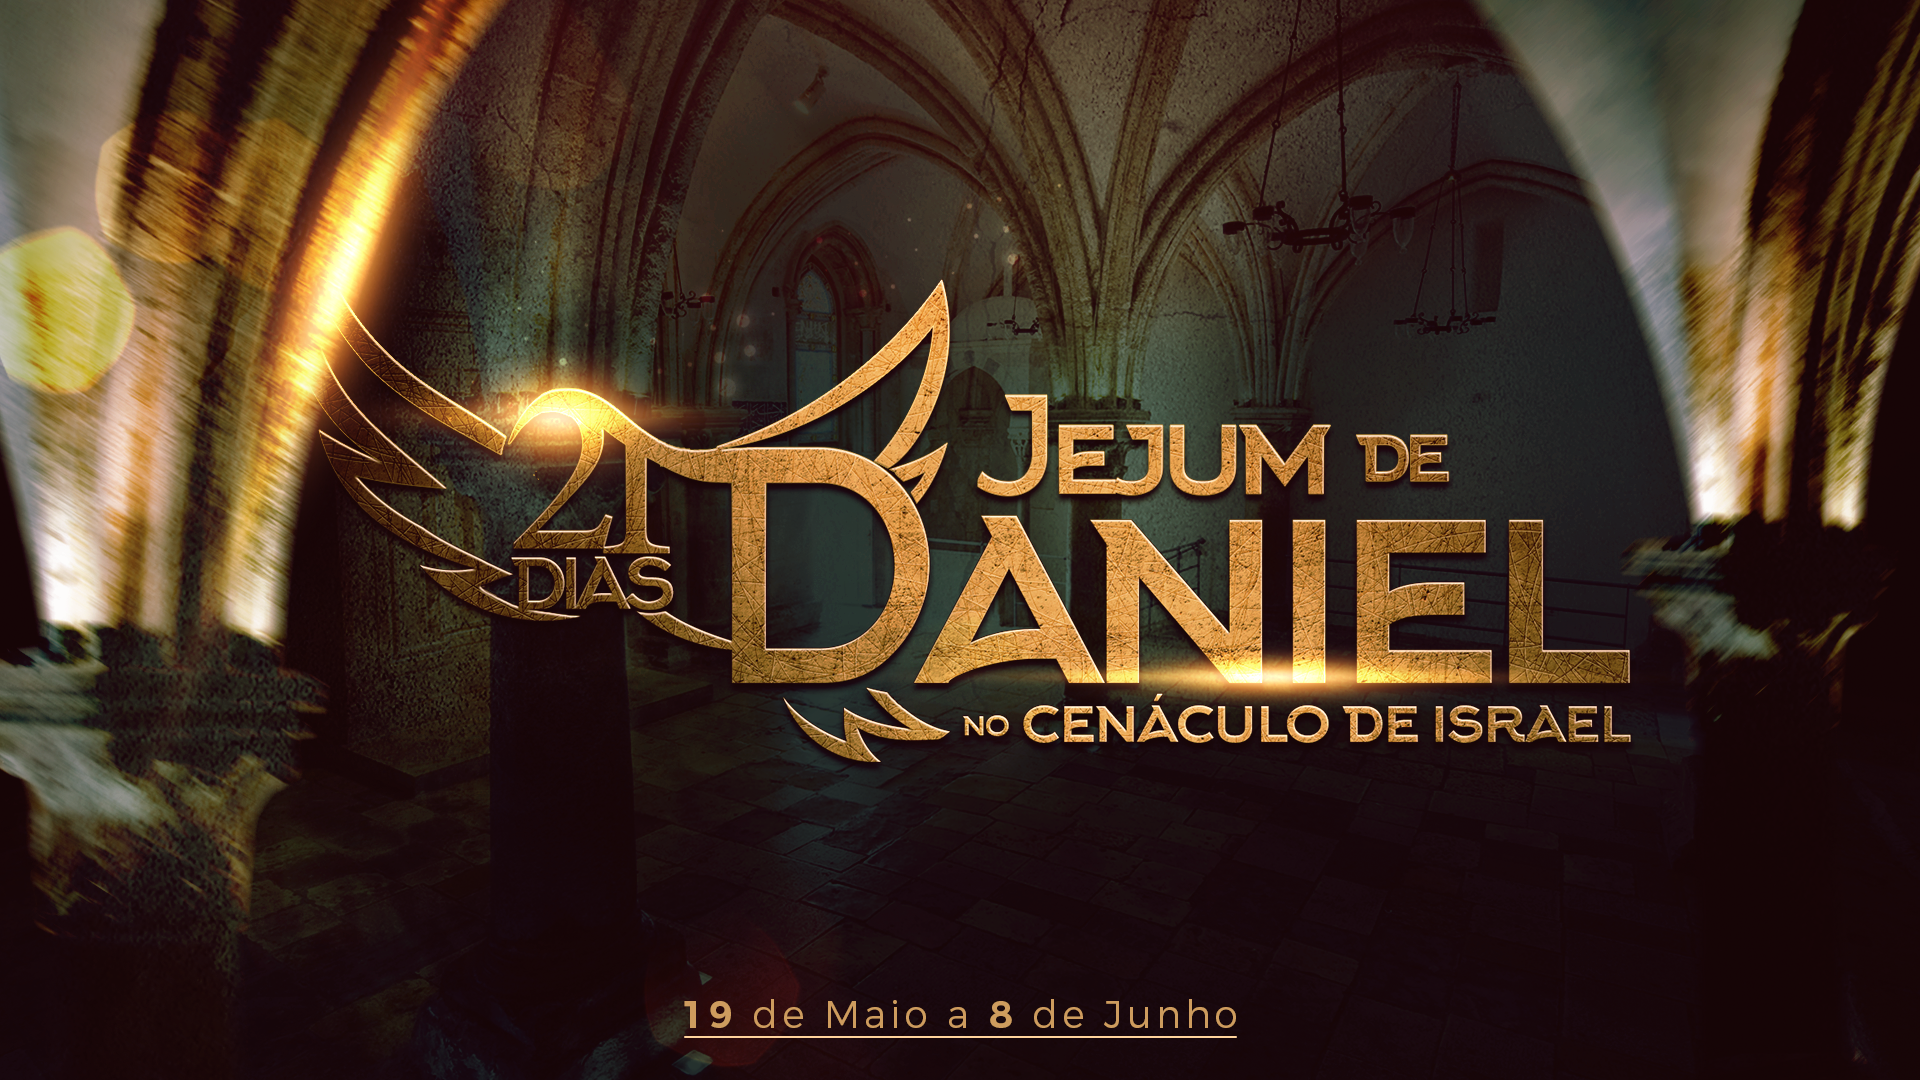 Participe do “Jejum de Daniel”, que acontecerá entre os dias 19 de maio e 9 de junho